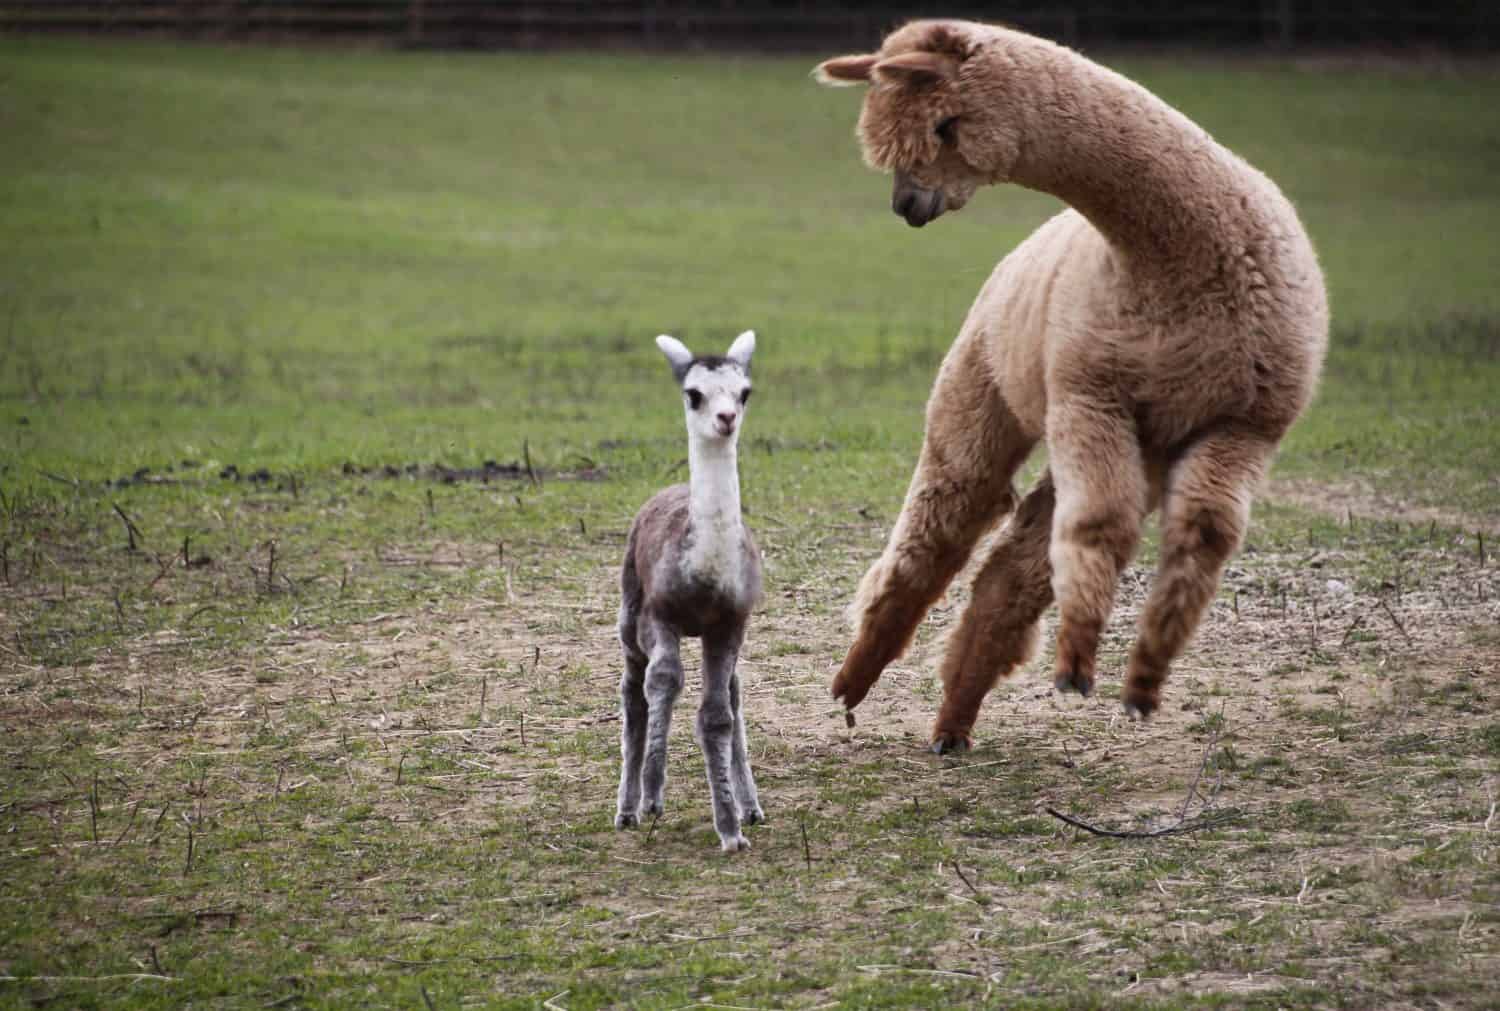 Alpaca cria baby surprise jump